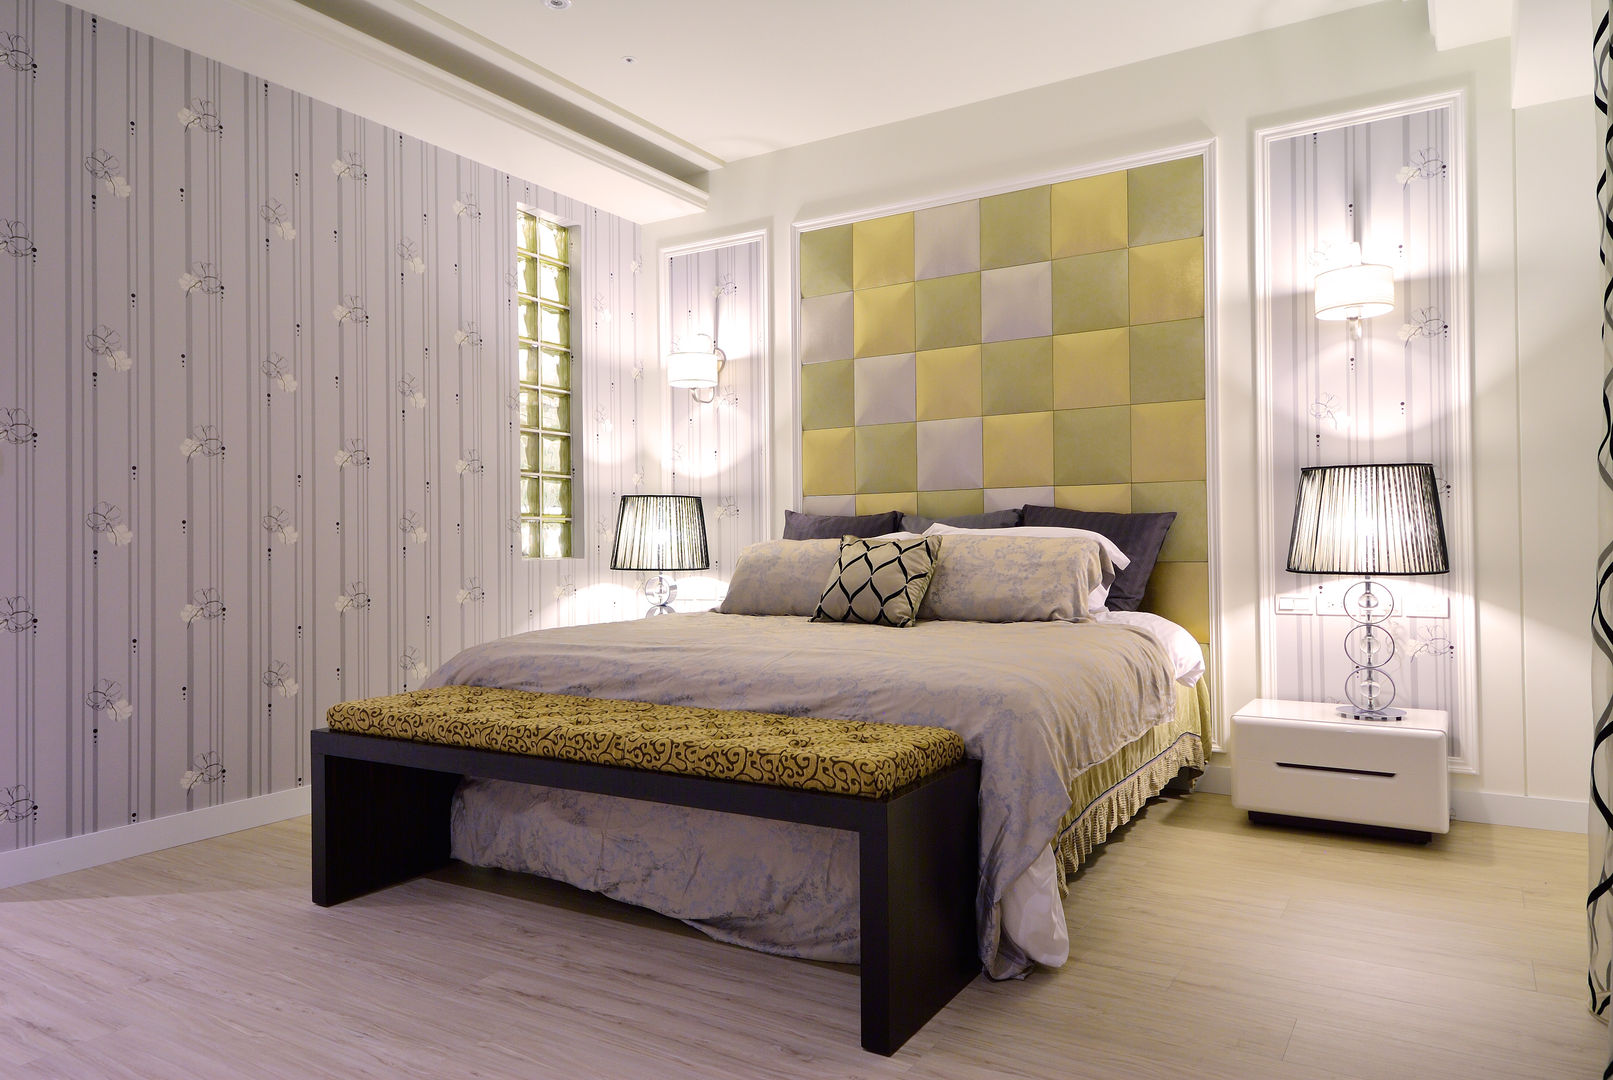 美式風格居家空間, 大觀創境空間設計事務所 大觀創境空間設計事務所 Eclectic style bedroom